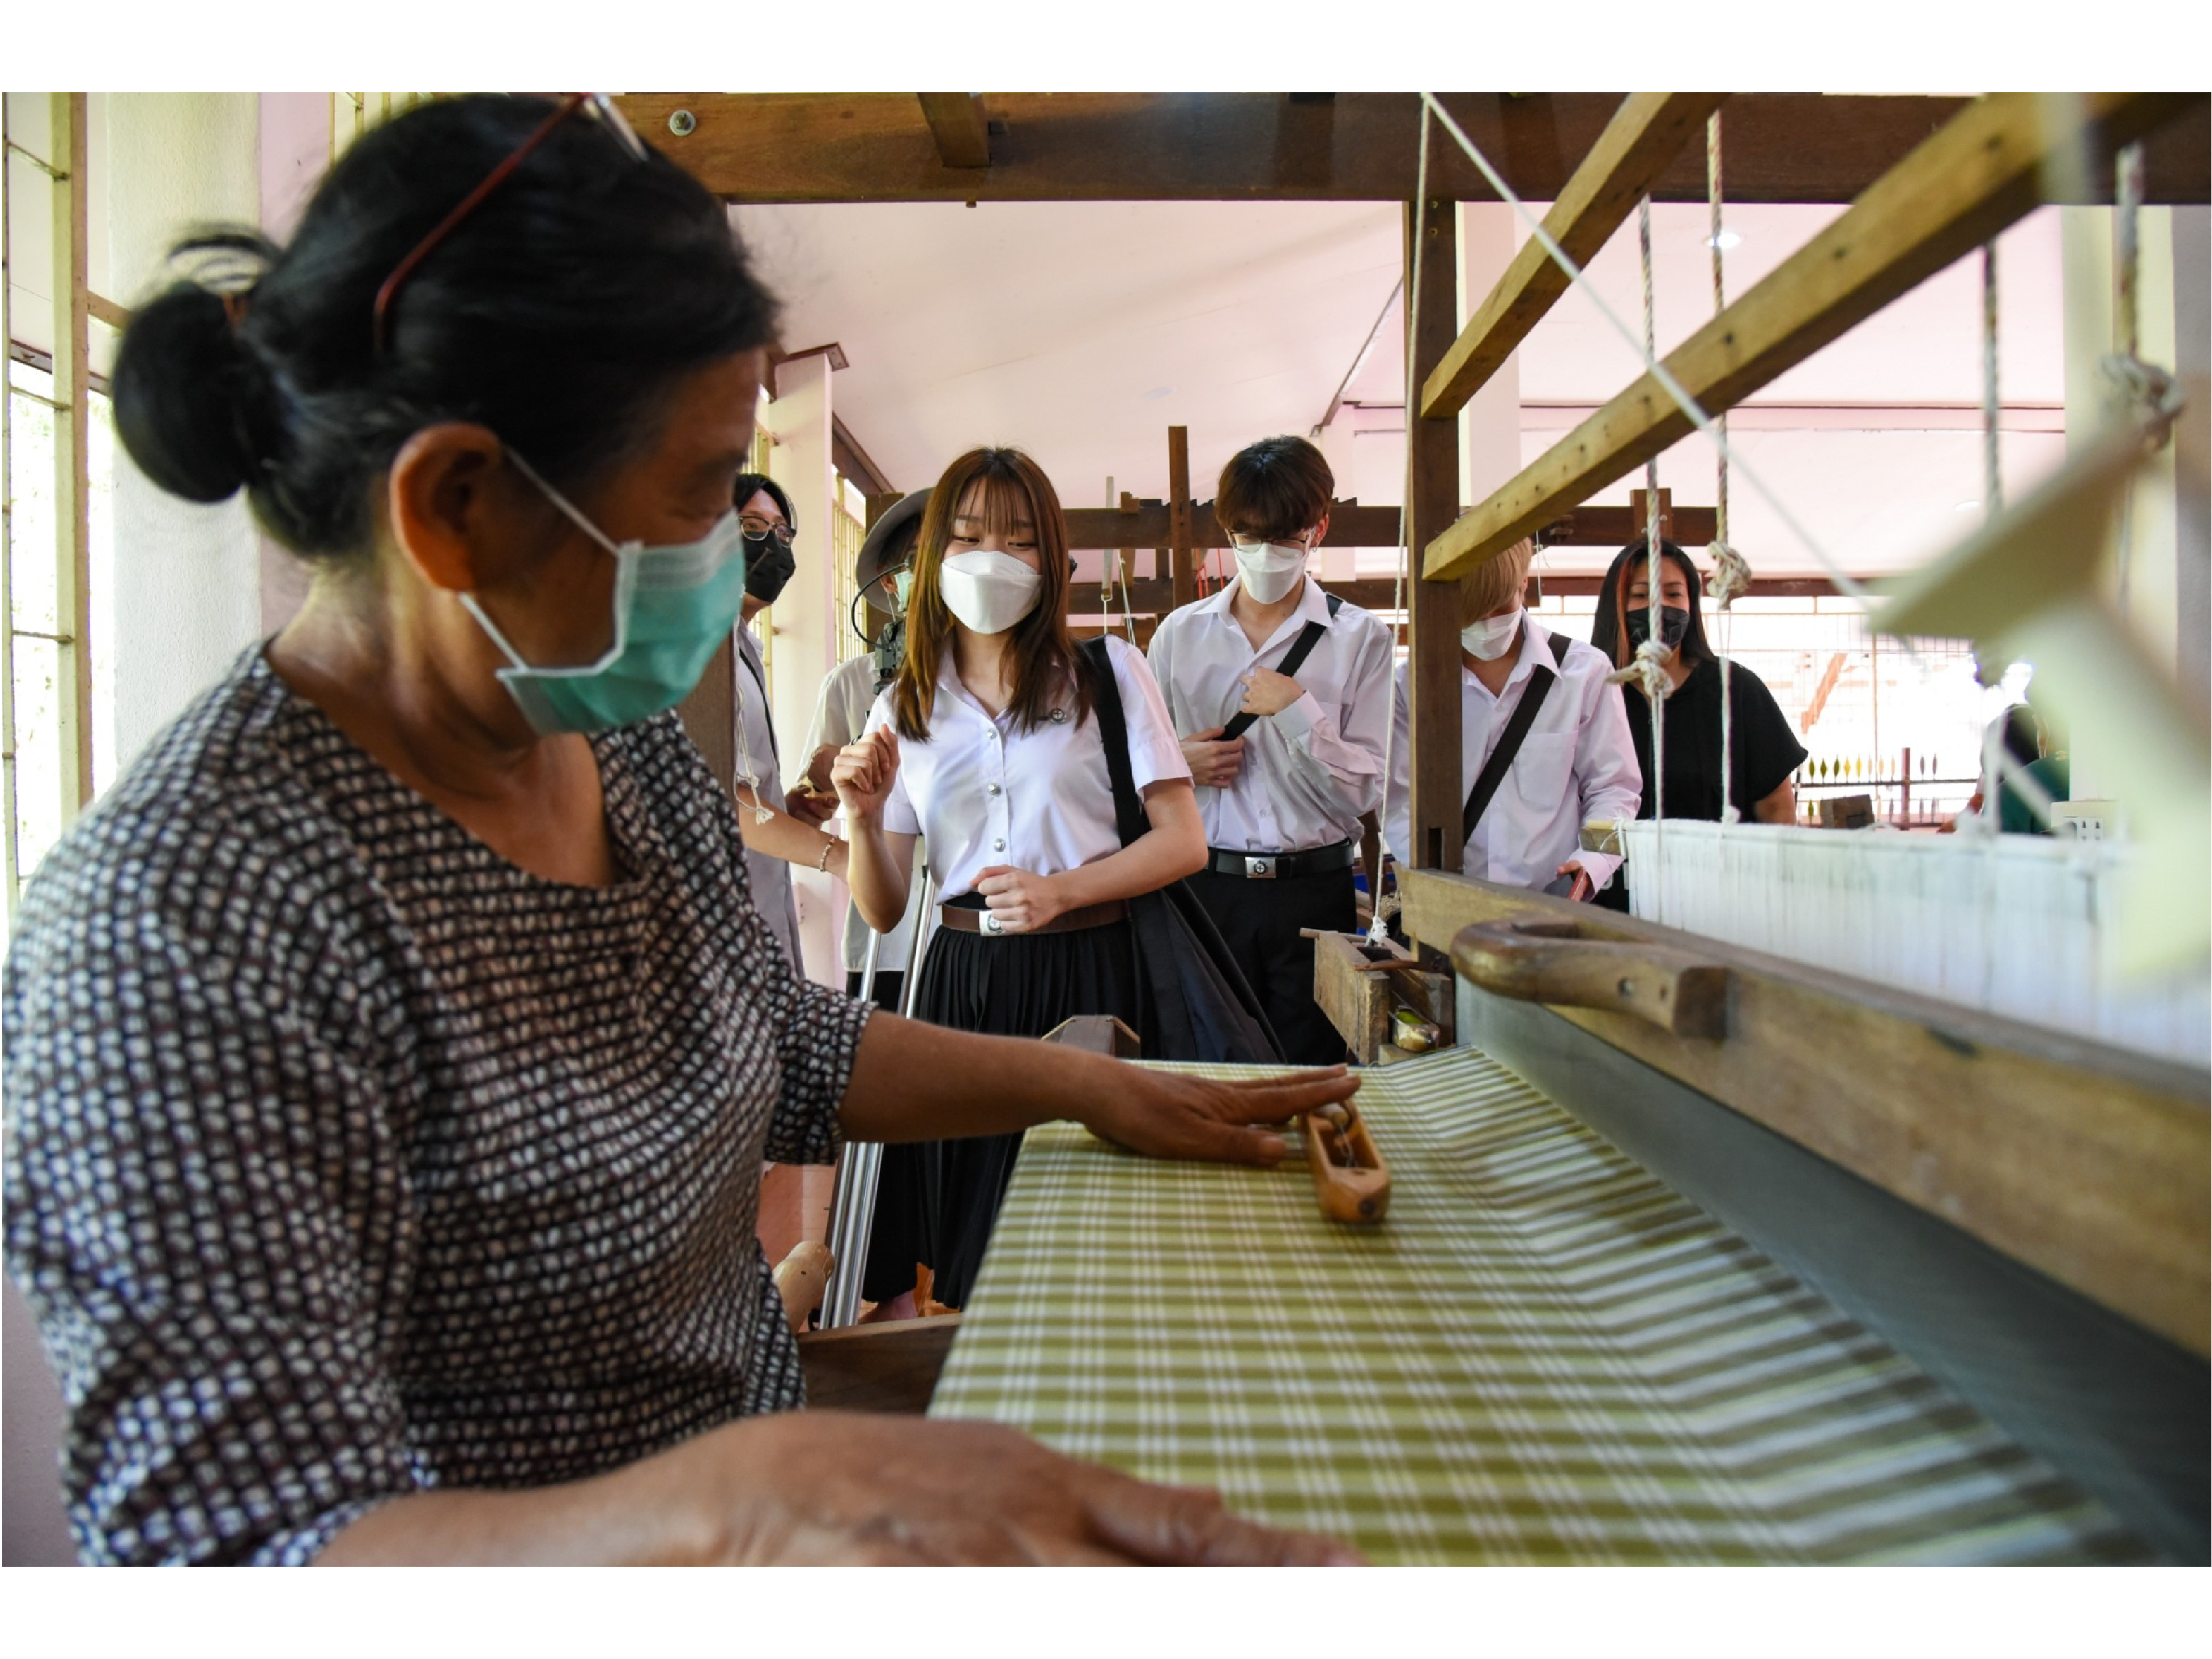 โครงการผ้าขาวม้าท้องถิ่นหัตถศิลป์ไทย ร่วมกับ eisa นำนักศึกษา ม.ศรีนครินทรวิโรฒ ลงพื้นที่วิสาหกิจชุมชนกลุ่มทอผ้าบ้านหนองเครือบุญ จ.พระนครศรีอยุธยา และสโมสรฟุตบอลอยุธยา ยูไนเต็ด